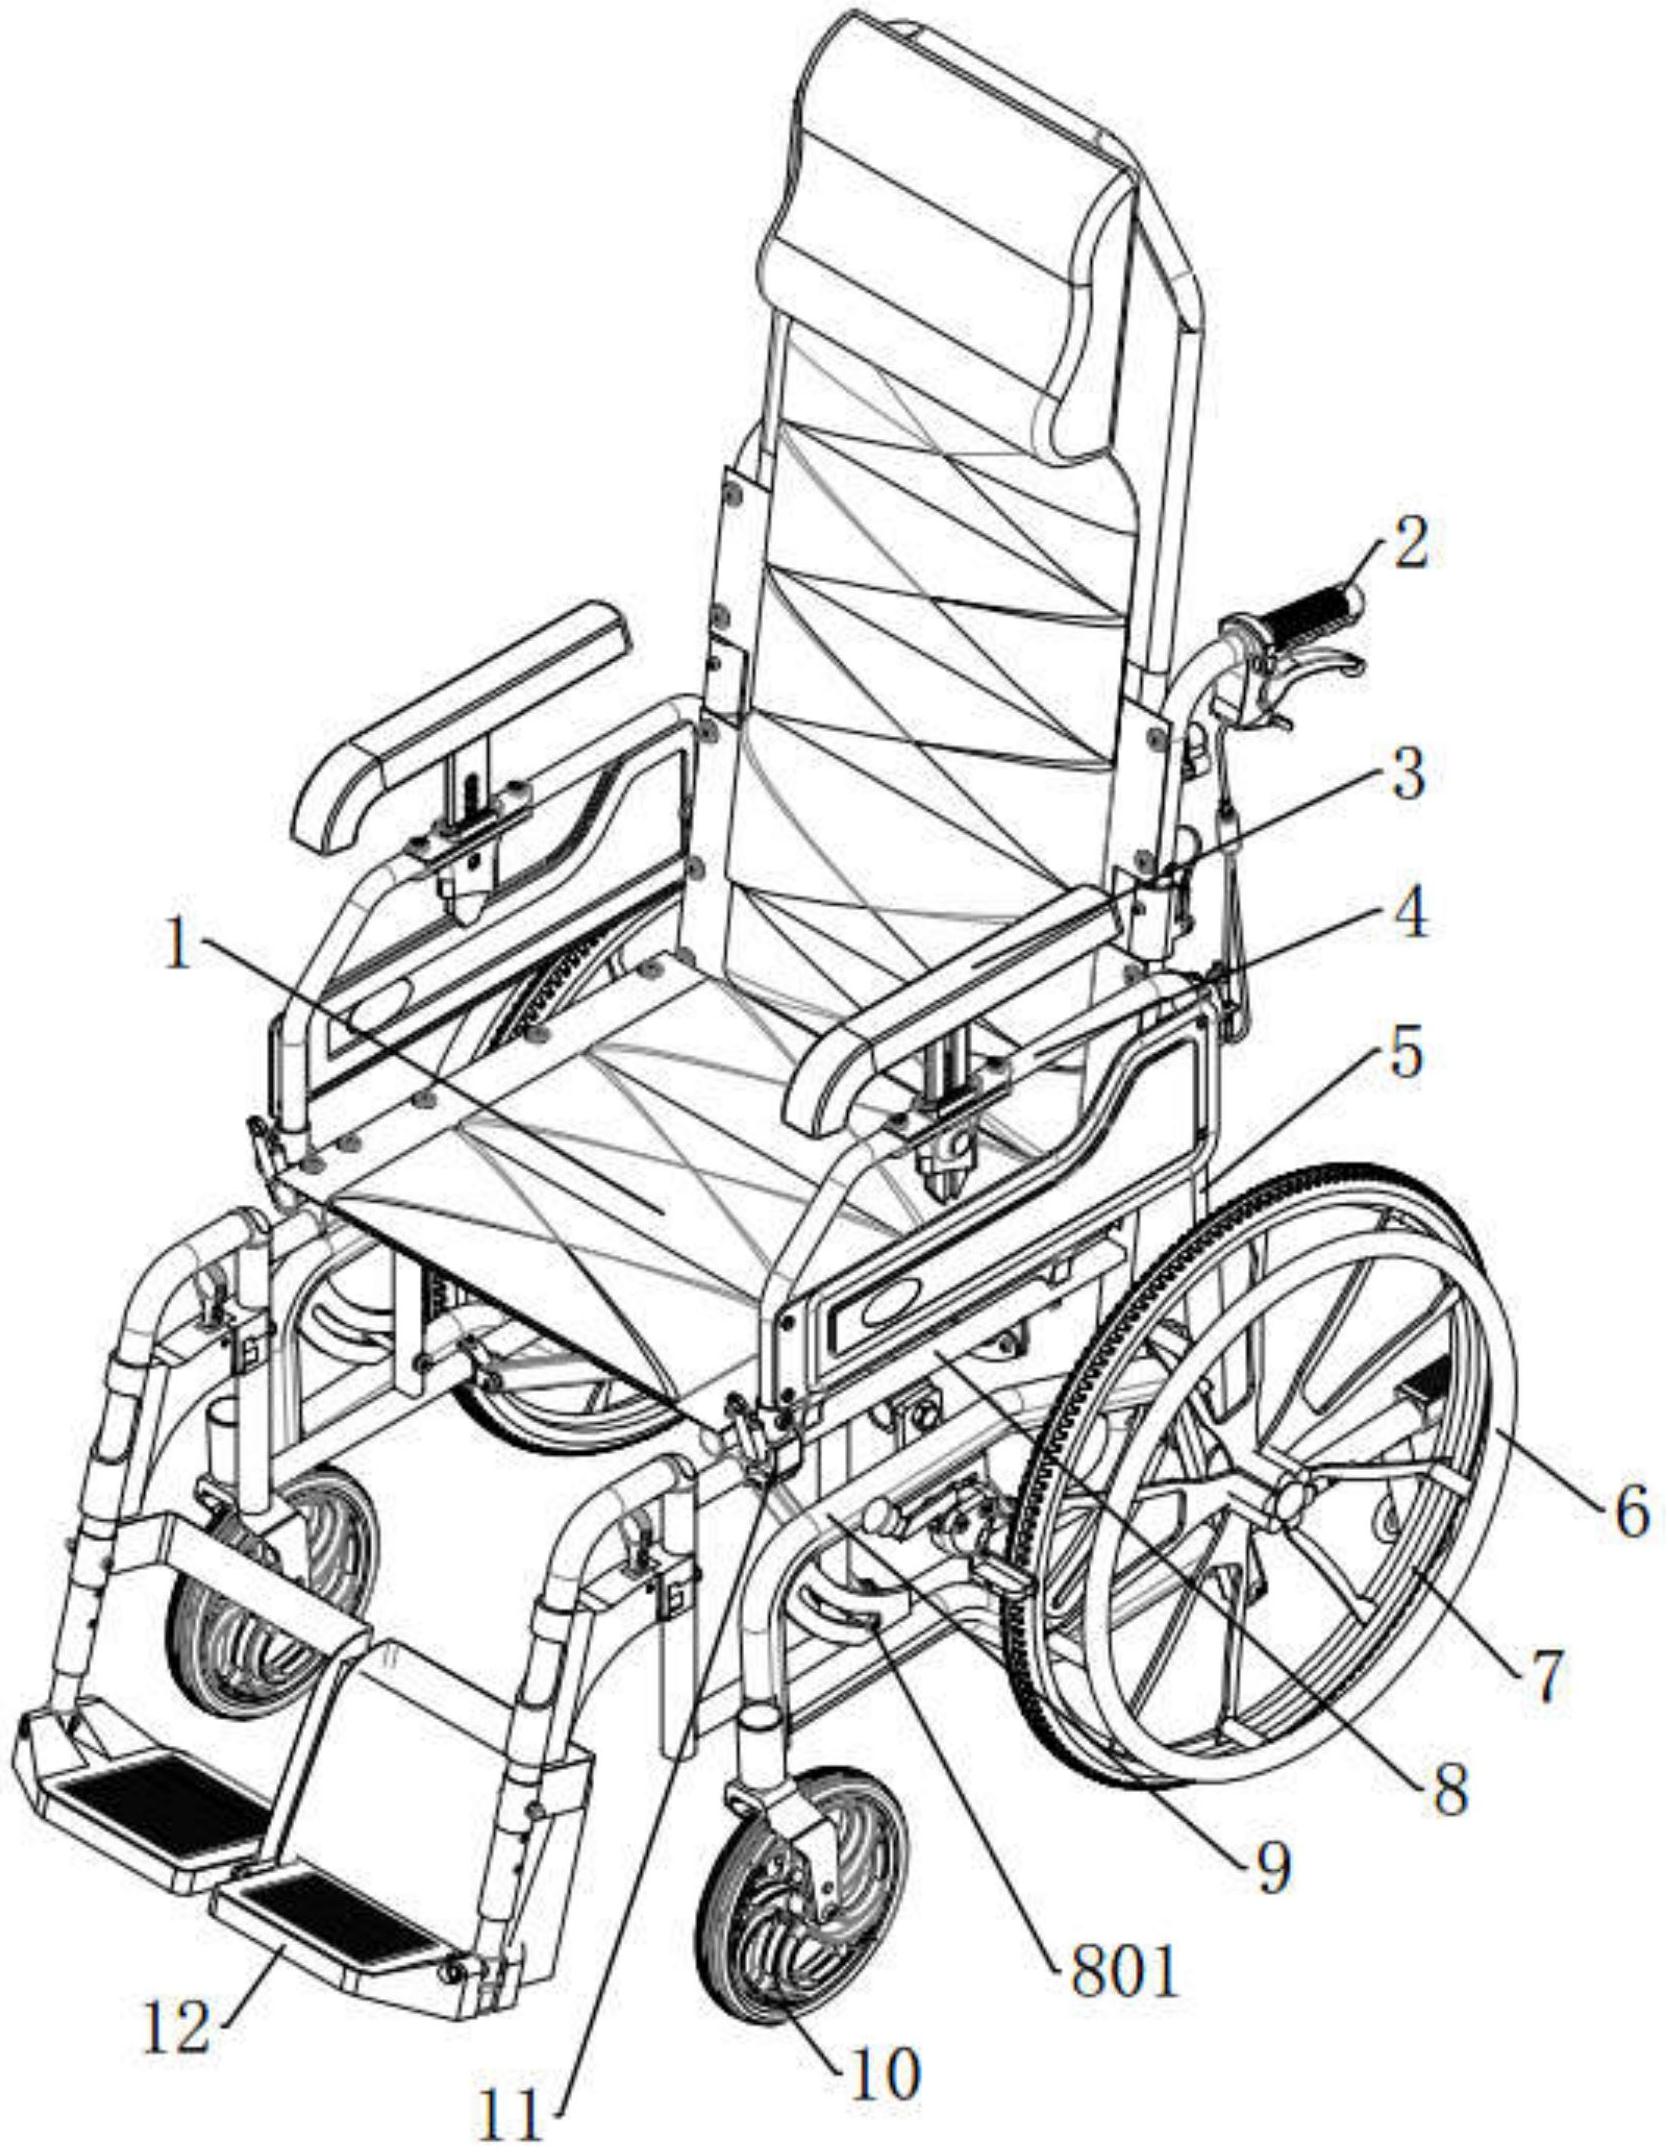 轮椅组装示意图图片